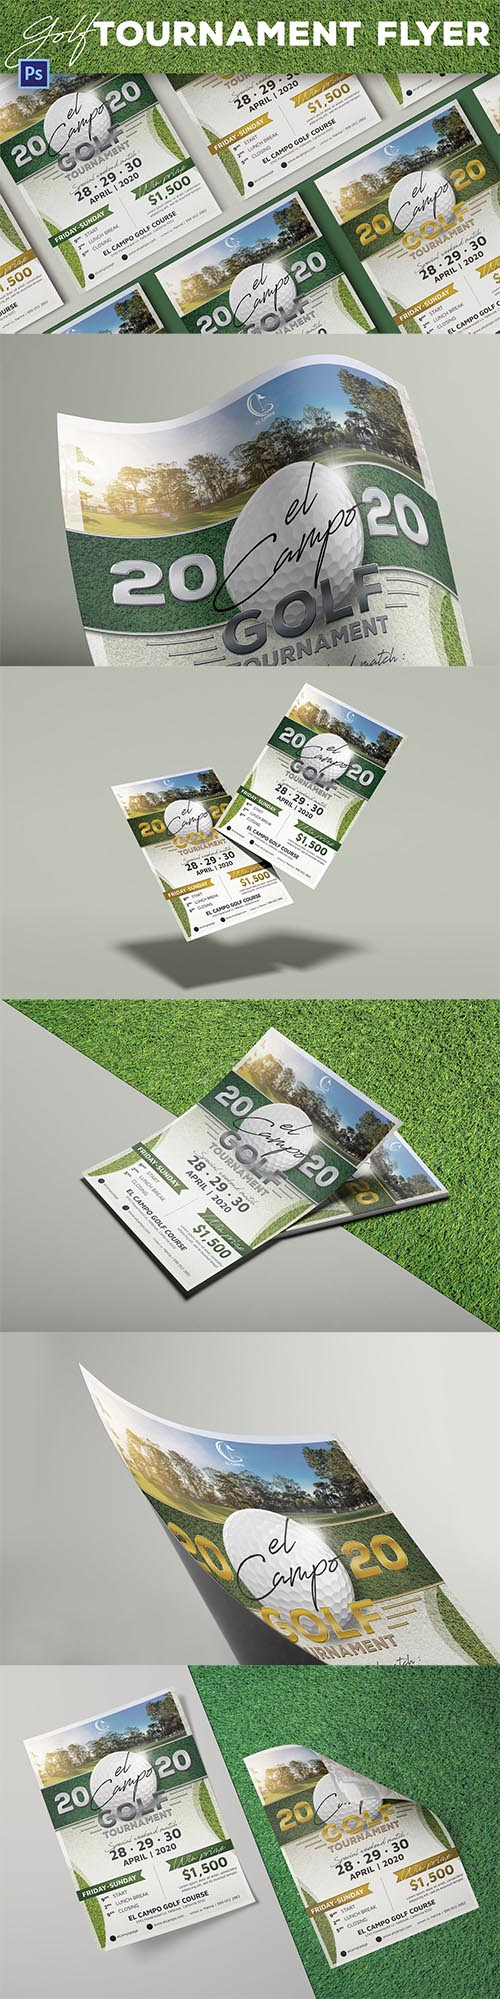 Golf Tournament Flyer PSD